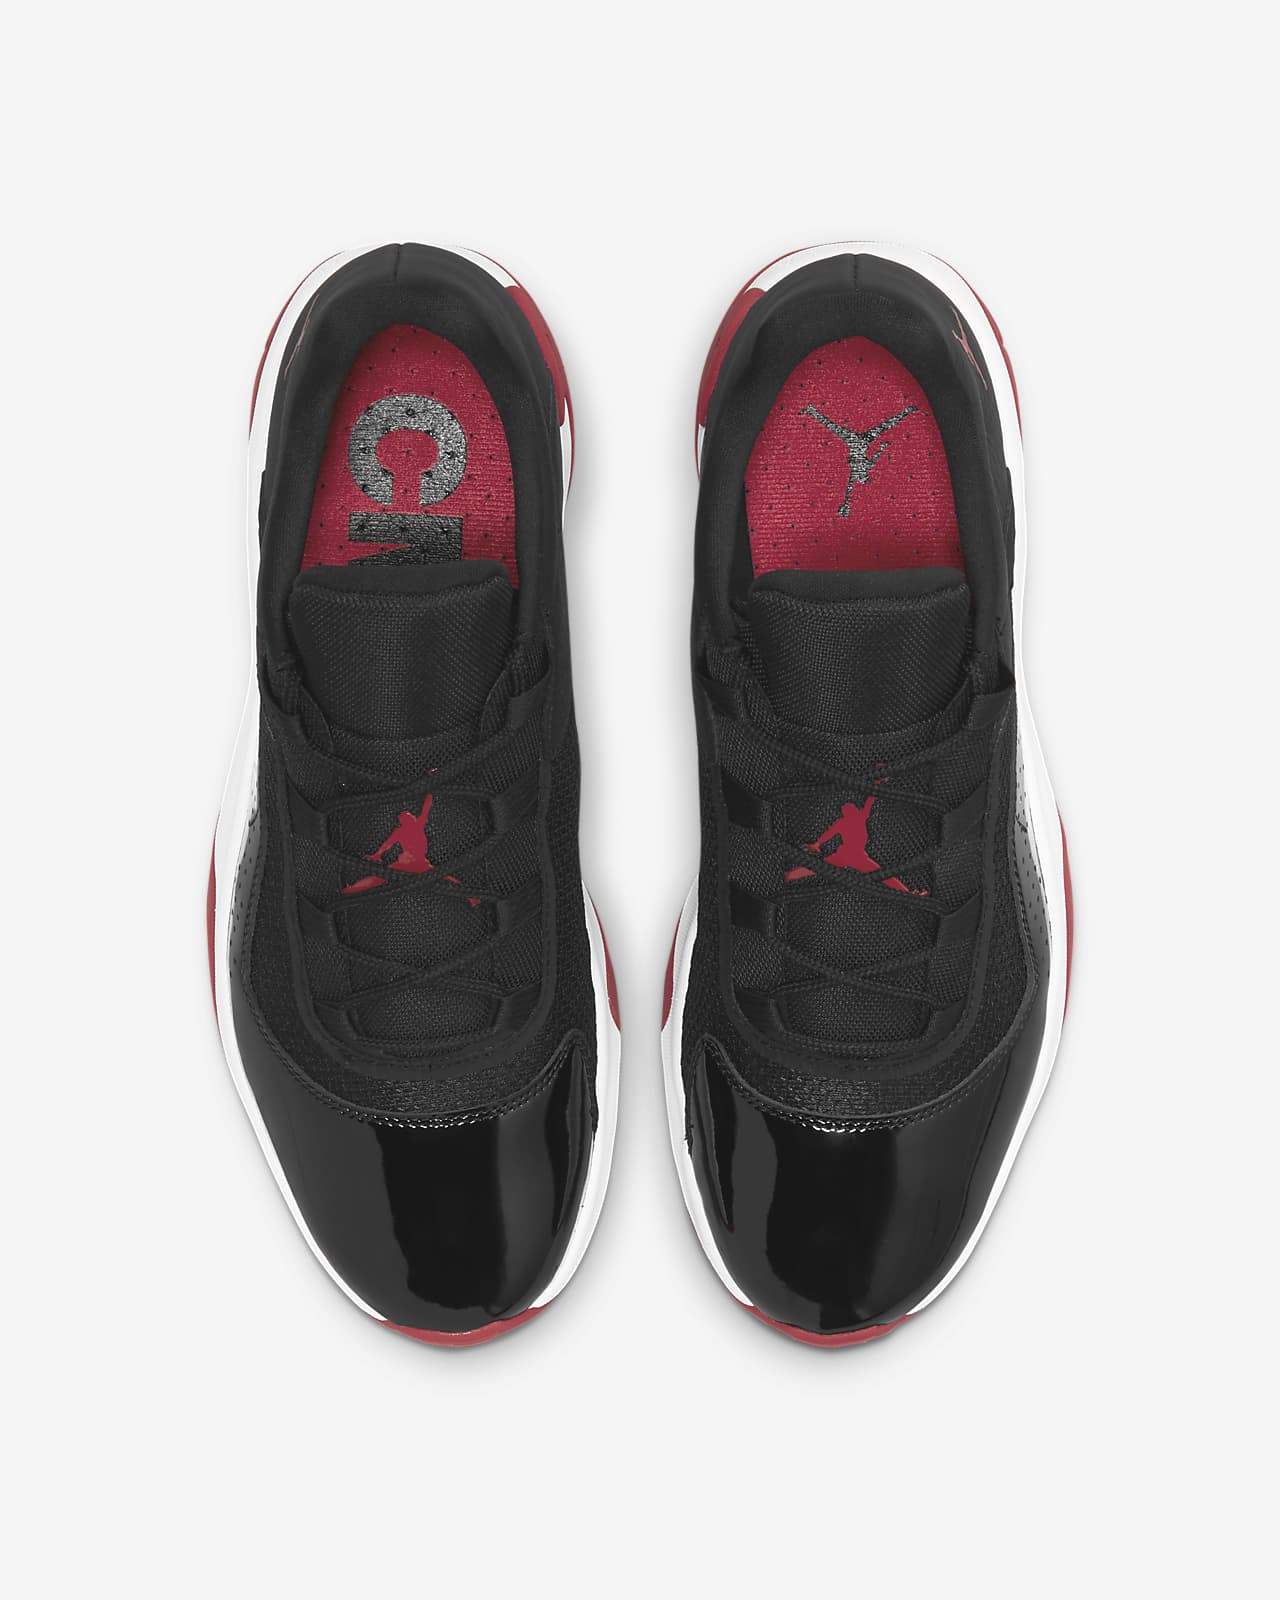 Air Jordan 11 Cmft Low Men S Shoes Nike Gb